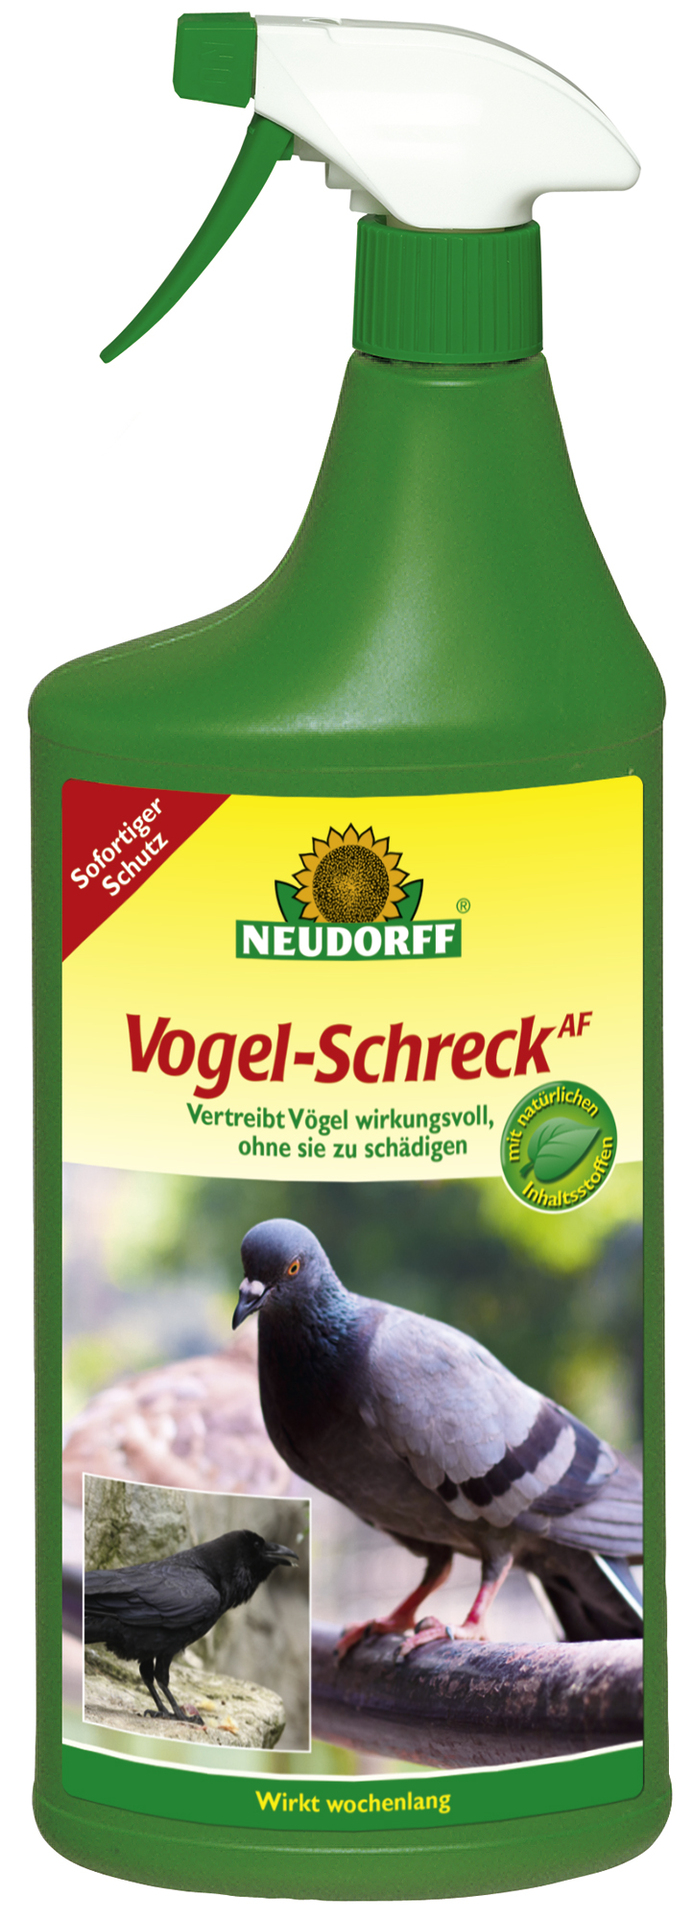 W. Neudorff GmbH KG Vogelschreck anwendungsfertig 1l